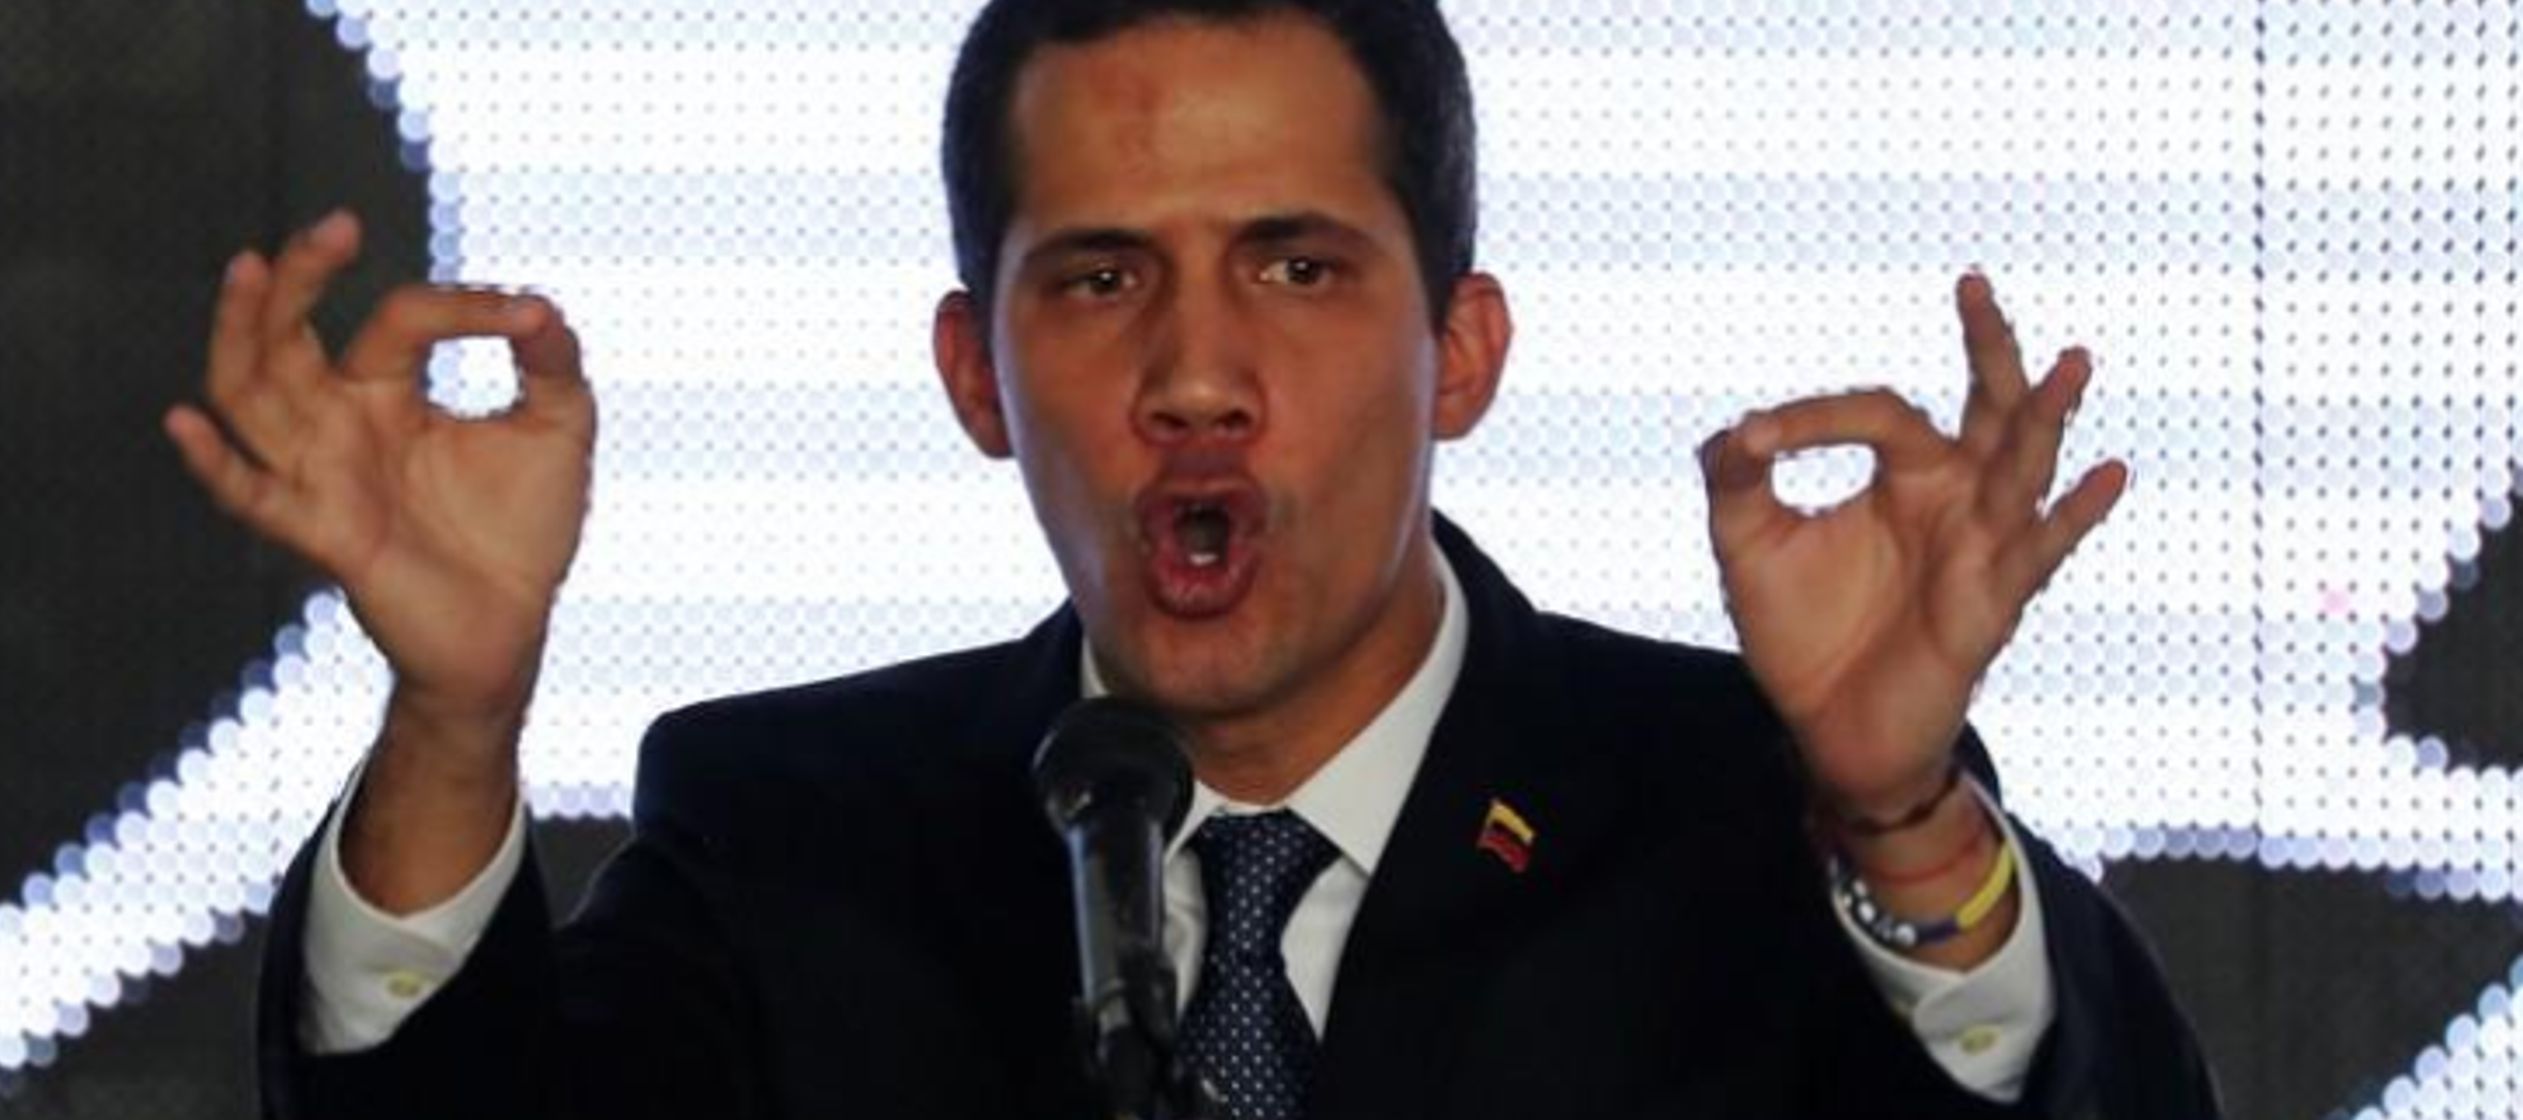 Poco después, en un acto en Caracas, Guaidó desestimó la medida. “No...